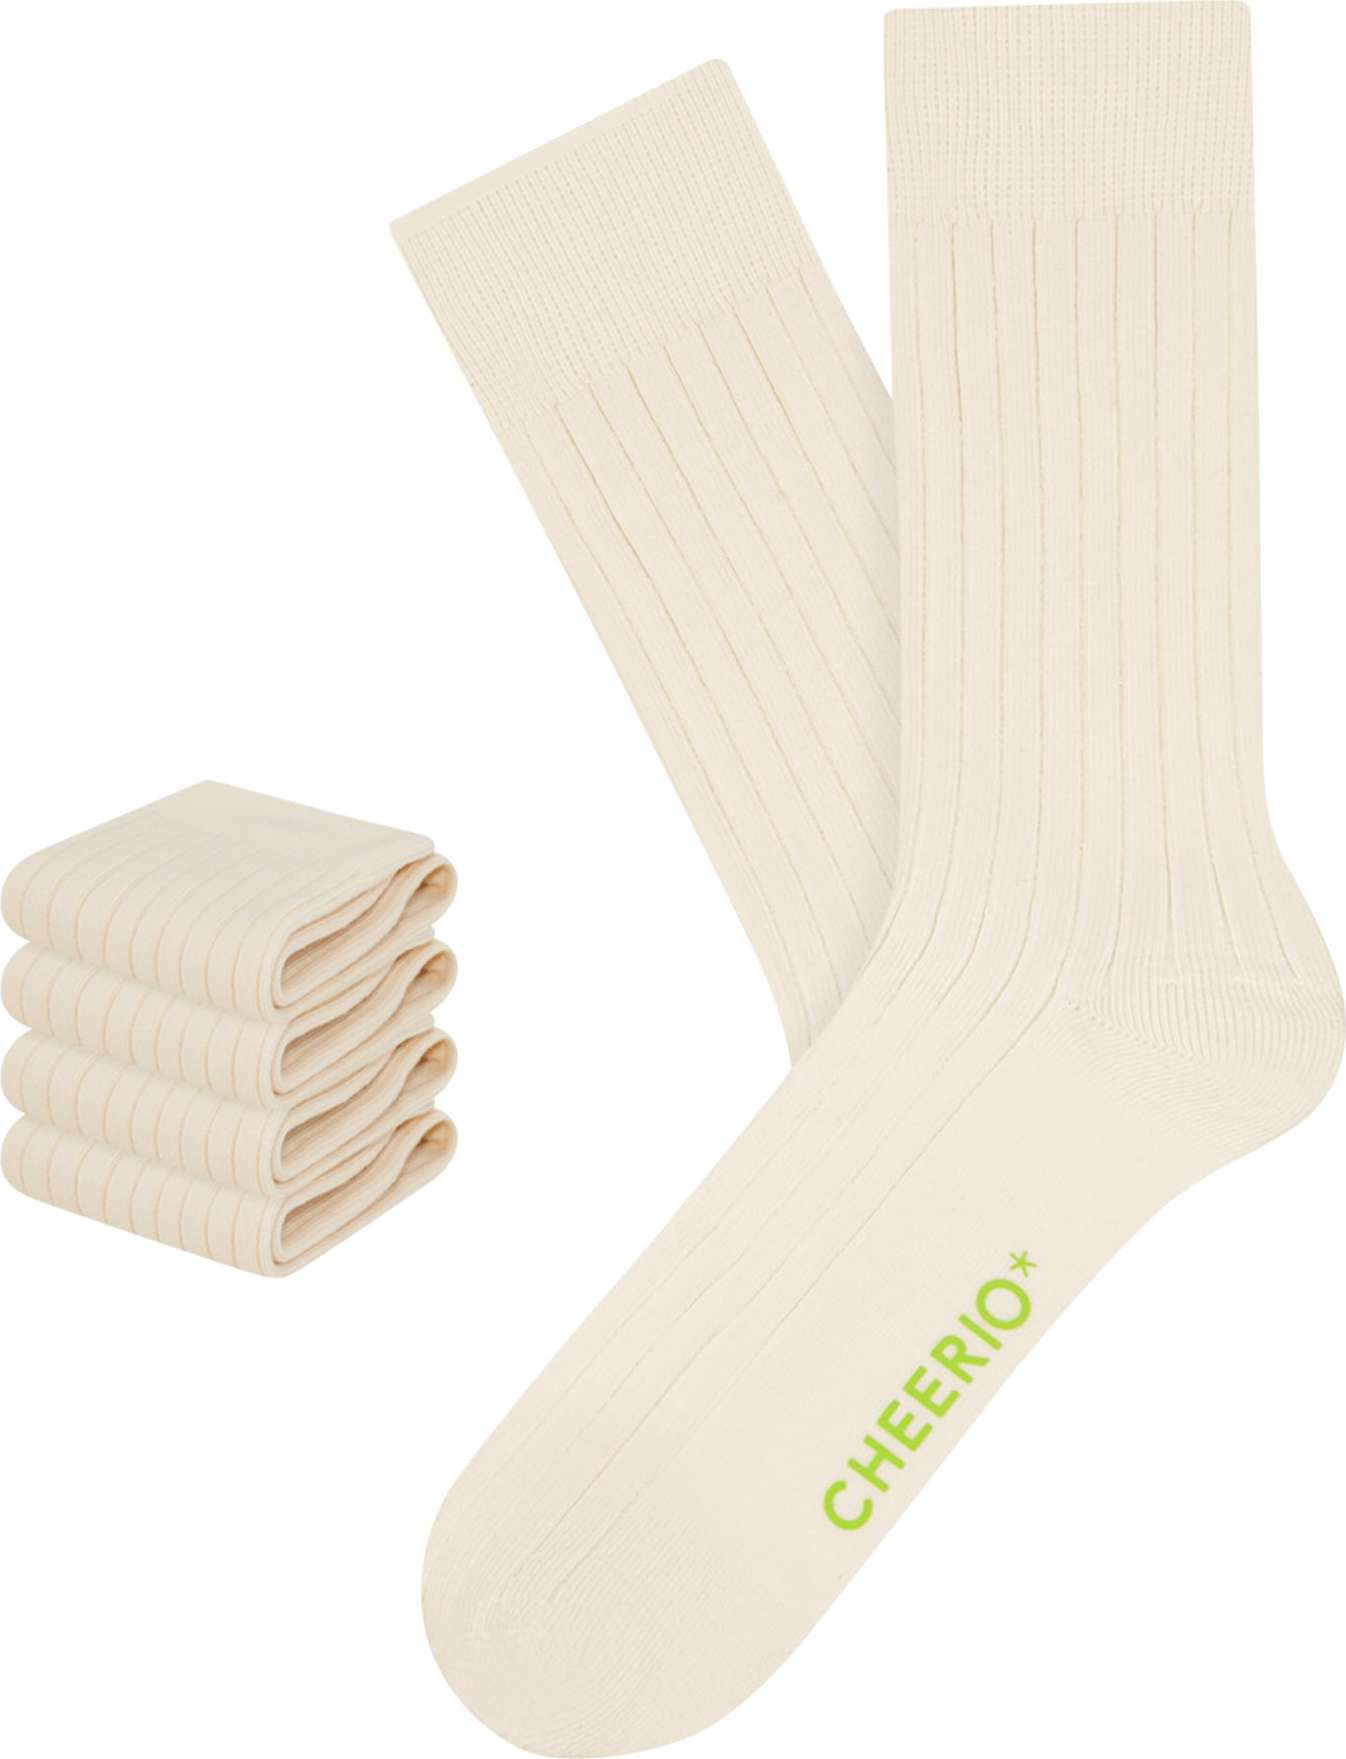 CHEERIO* Ponožky 'TOUGH GUY 4P' barva bílé vlny